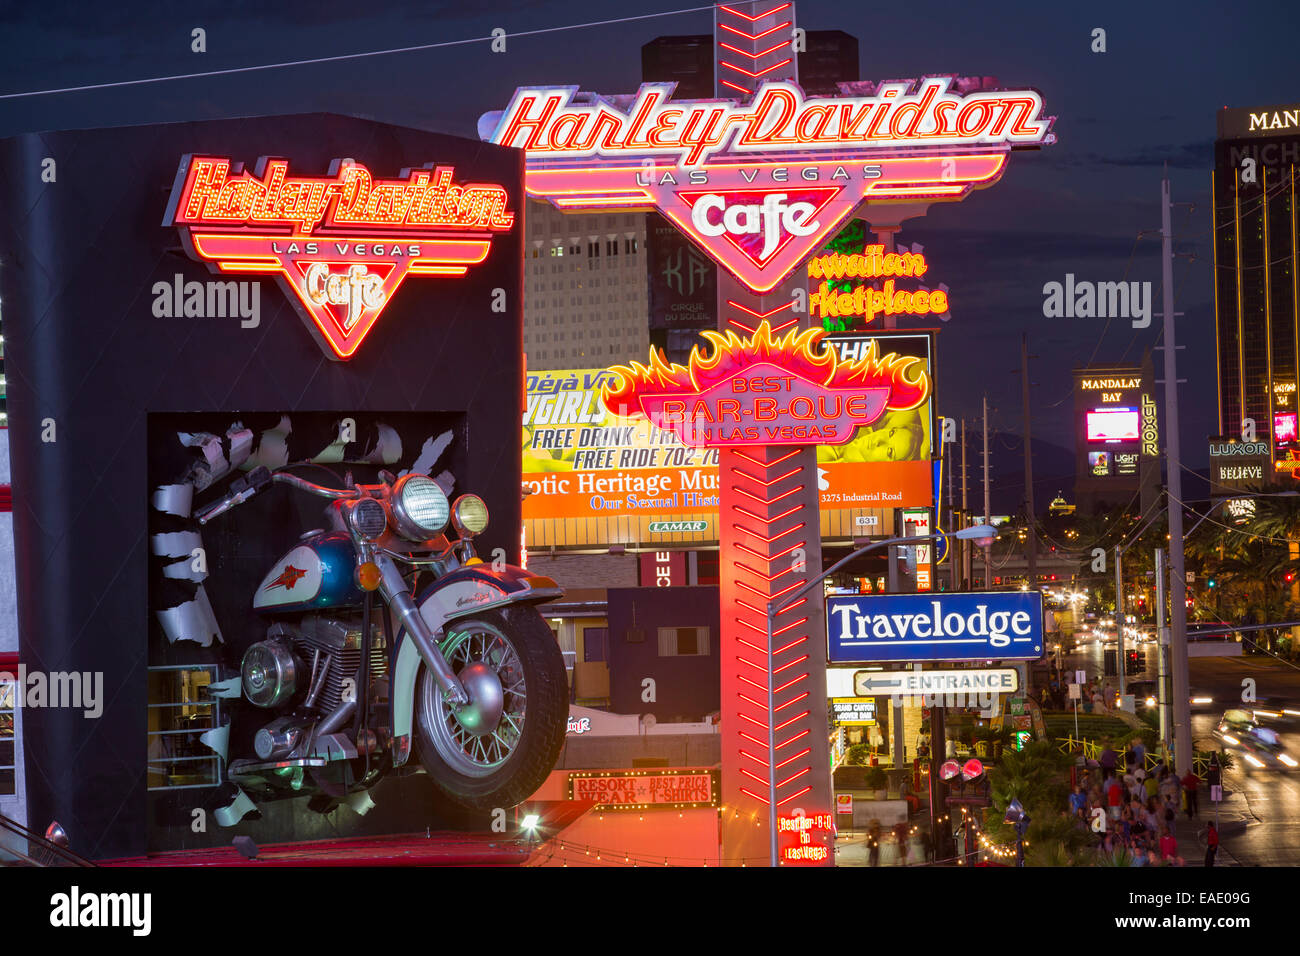 Das Harley Davidson Cafe am Las Vegas Boulevard in der Abenddämmerung, Las Vegas, Nevada, USA, wohl am meisten unhaltbar Stadt der Welt, nutzt es Unmengen von Wasser mitten in der Wüste und große Mengen an Energie an das macht verschwenderischsten der Städte. Stockfoto